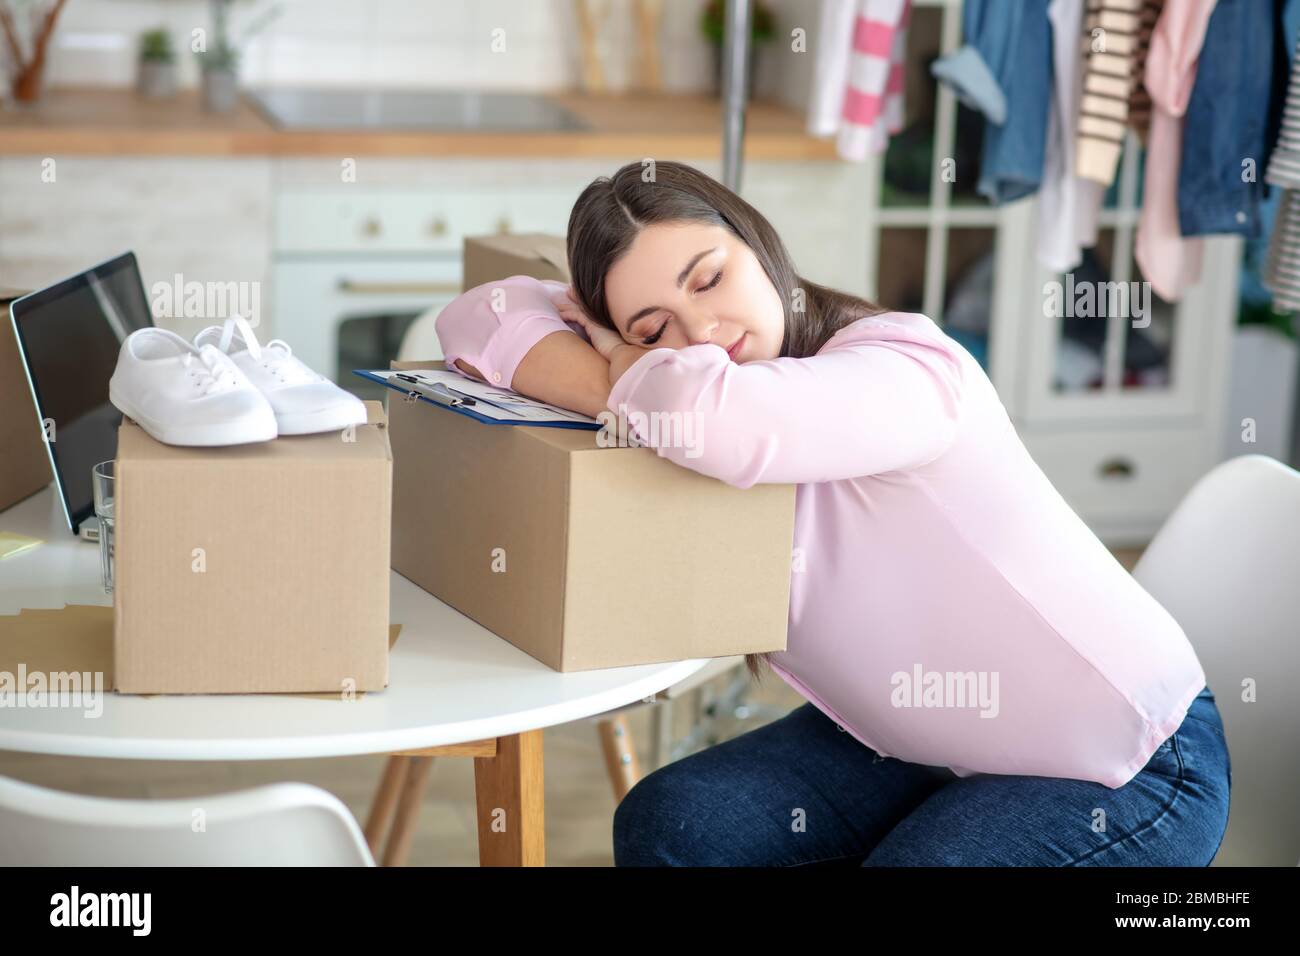 Dunkelhaarige junge Frau schläft auf den Boxen Stockfoto